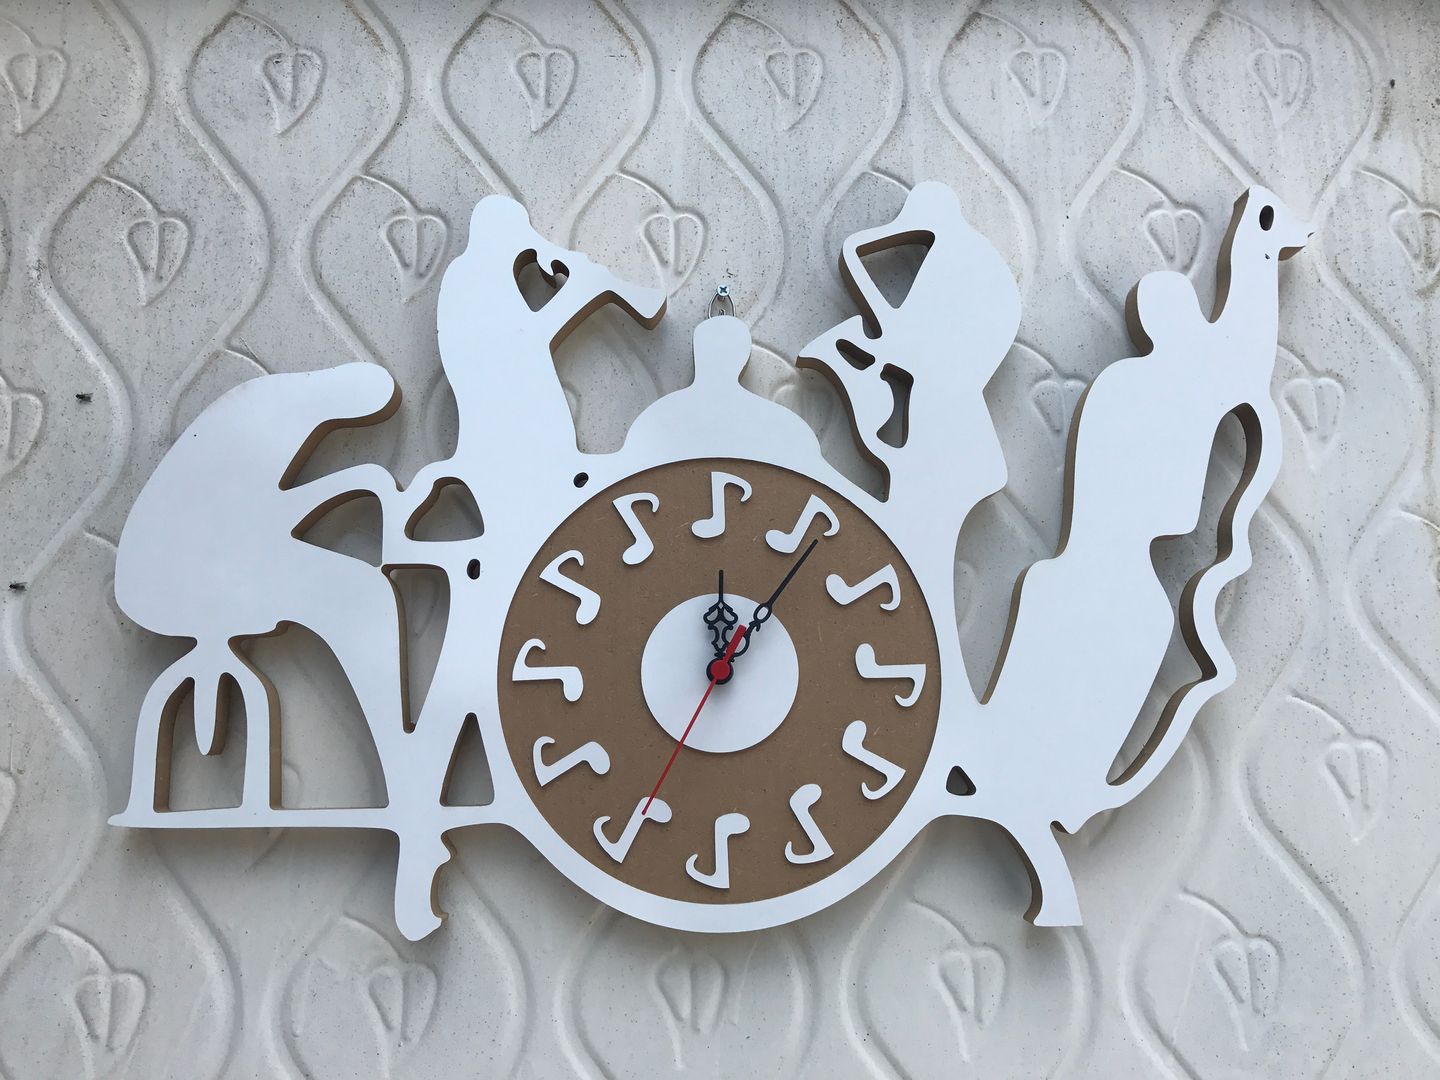 Çalgıcı Saat Taşcenter Acarlıoğlu Doğal Taş Dekorasyon Modern Evler Ahşap Ahşap rengi saat,çalgıcı saat,mdf,mdf saat,müzik saati,ahşap saat,Aksesuarlar & Dekorasyon